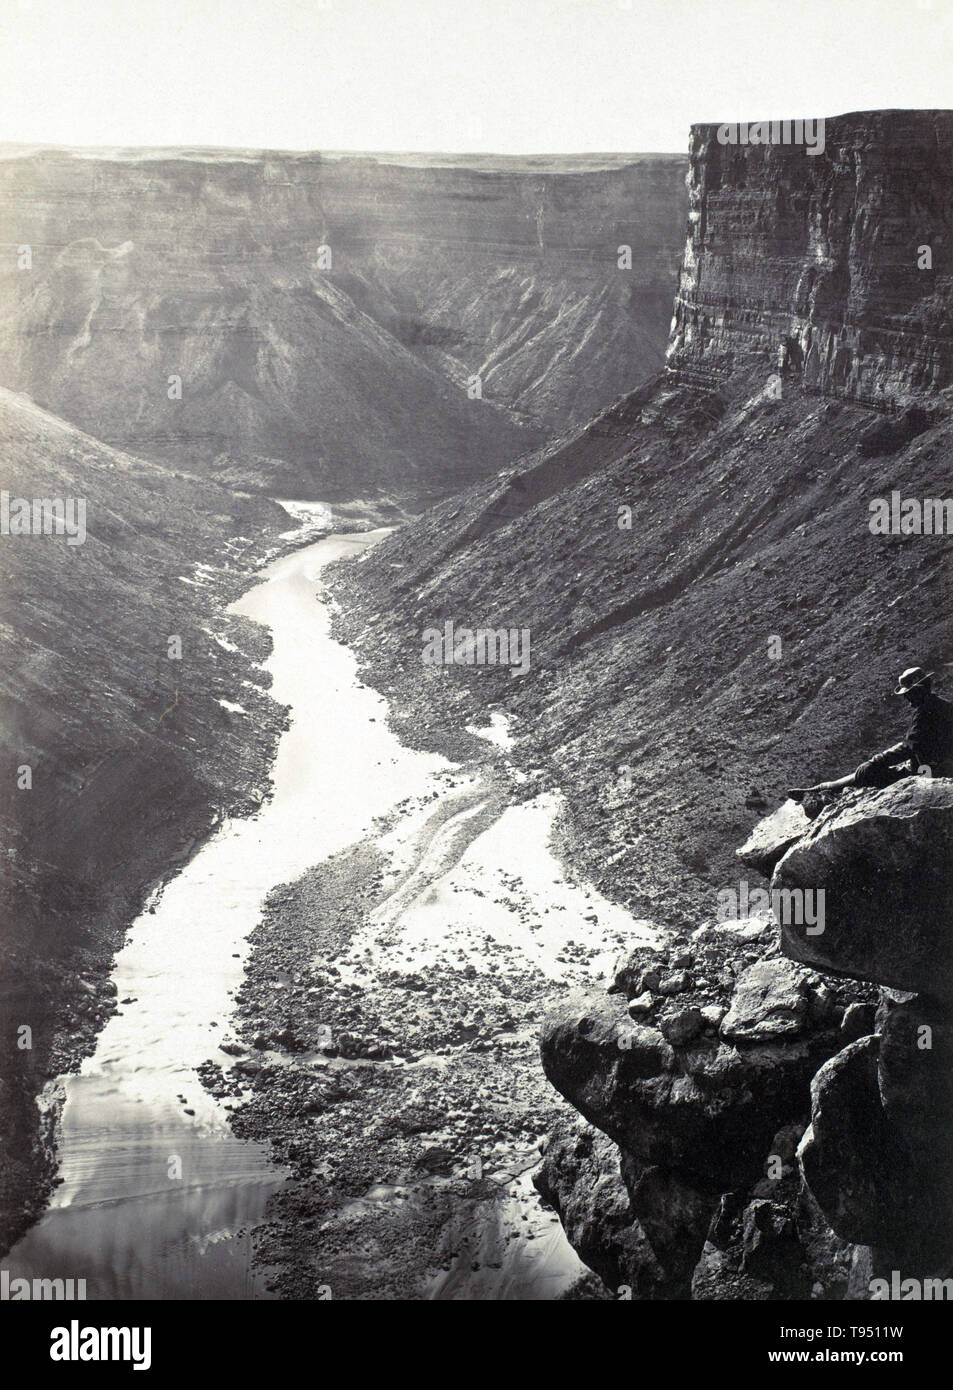 Mirando hacia el oeste por el Río Colorado cerca de Paria Creek, en el Gran Cañón. Fotografiado por William Bell (1831-1910) en 1872. Foto de stock